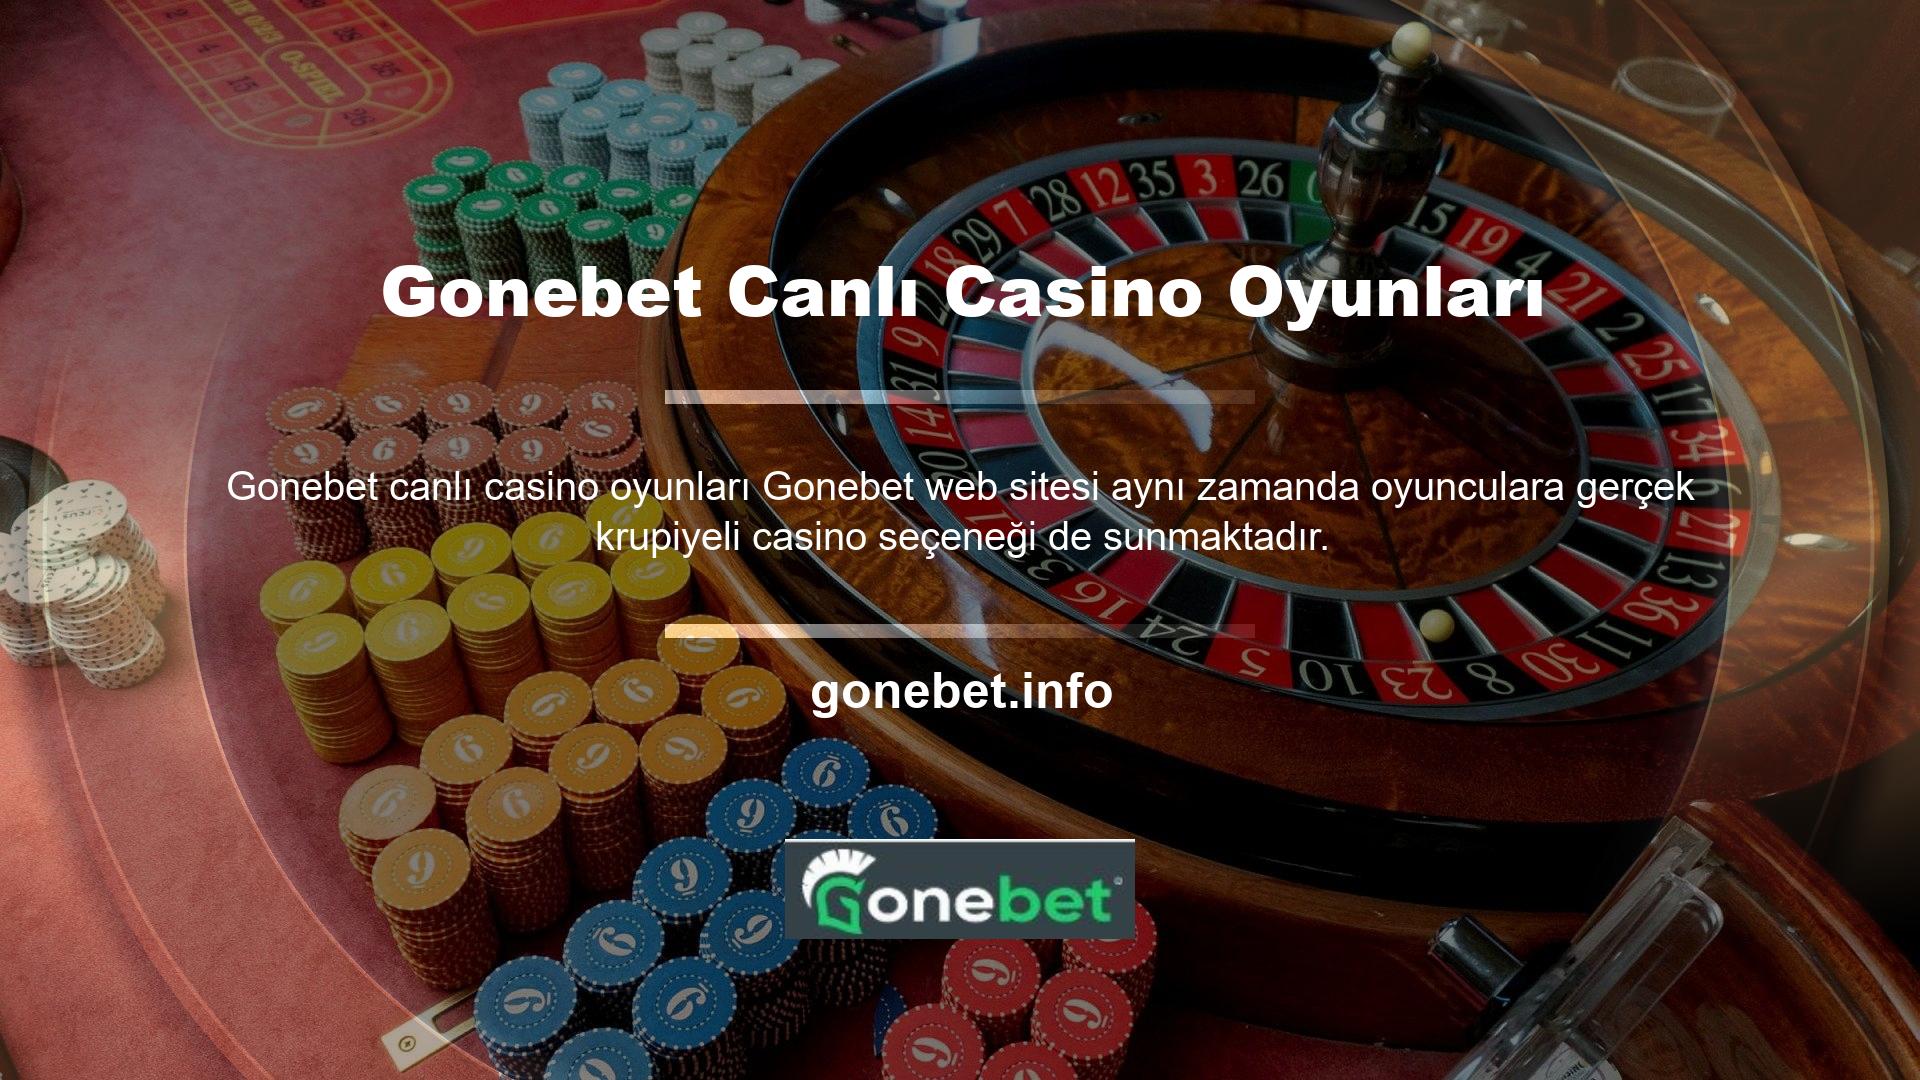 Gonebet günümüzün en güvenilir ve ünlü casinolardan biridir ve Türkiye'deki hizmetleriyle tanınmaya devam etmektedir